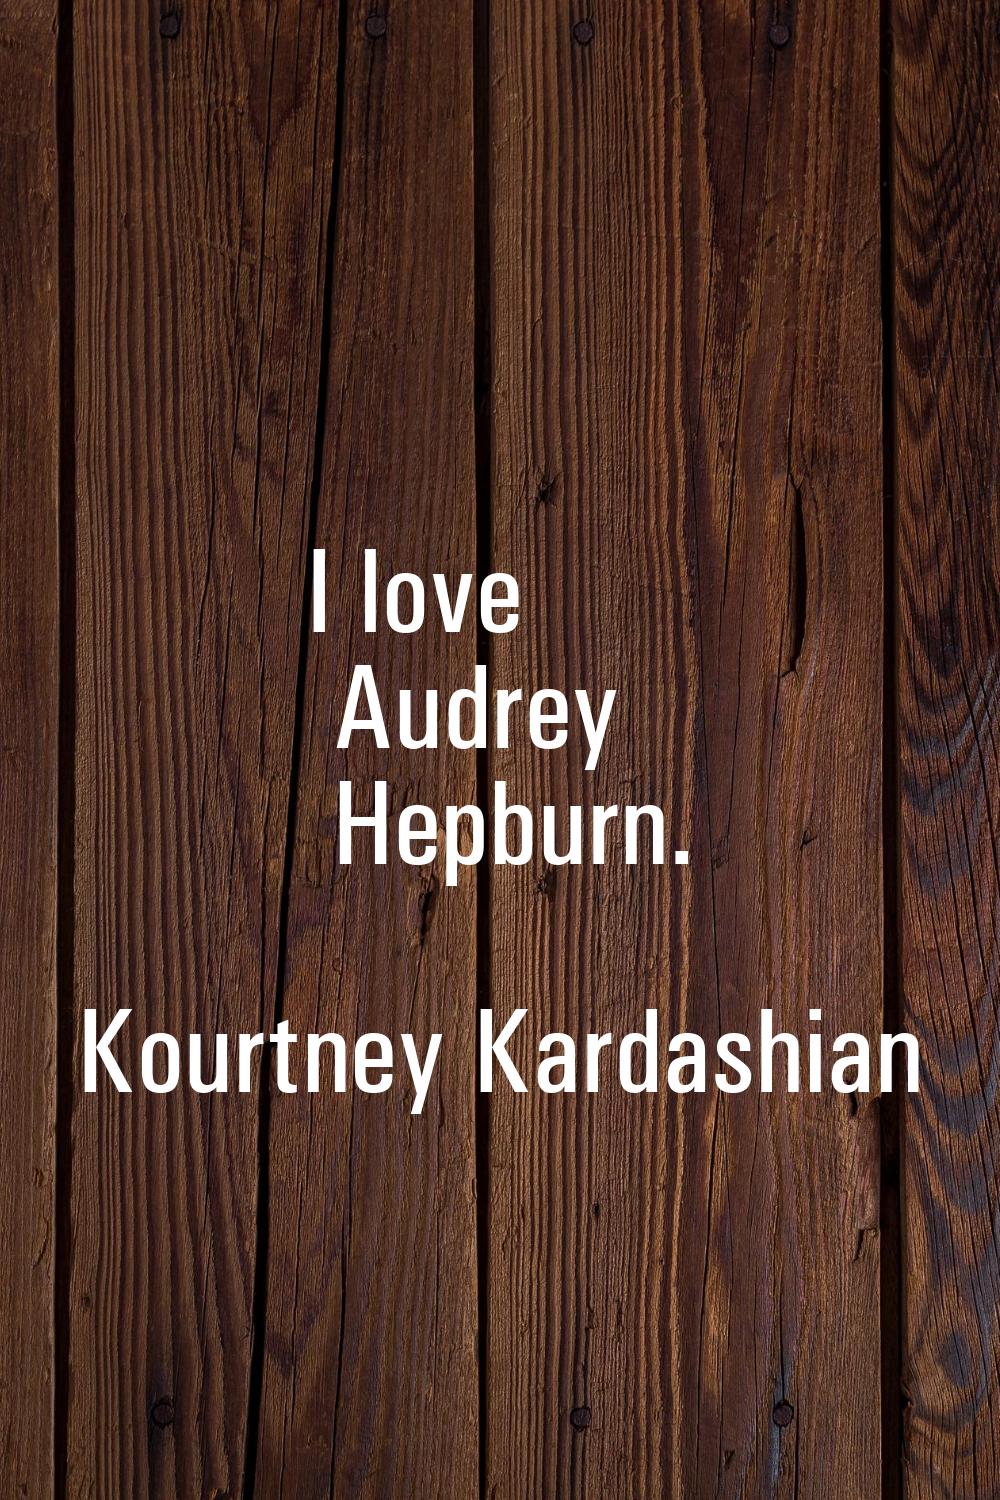 I love Audrey Hepburn.